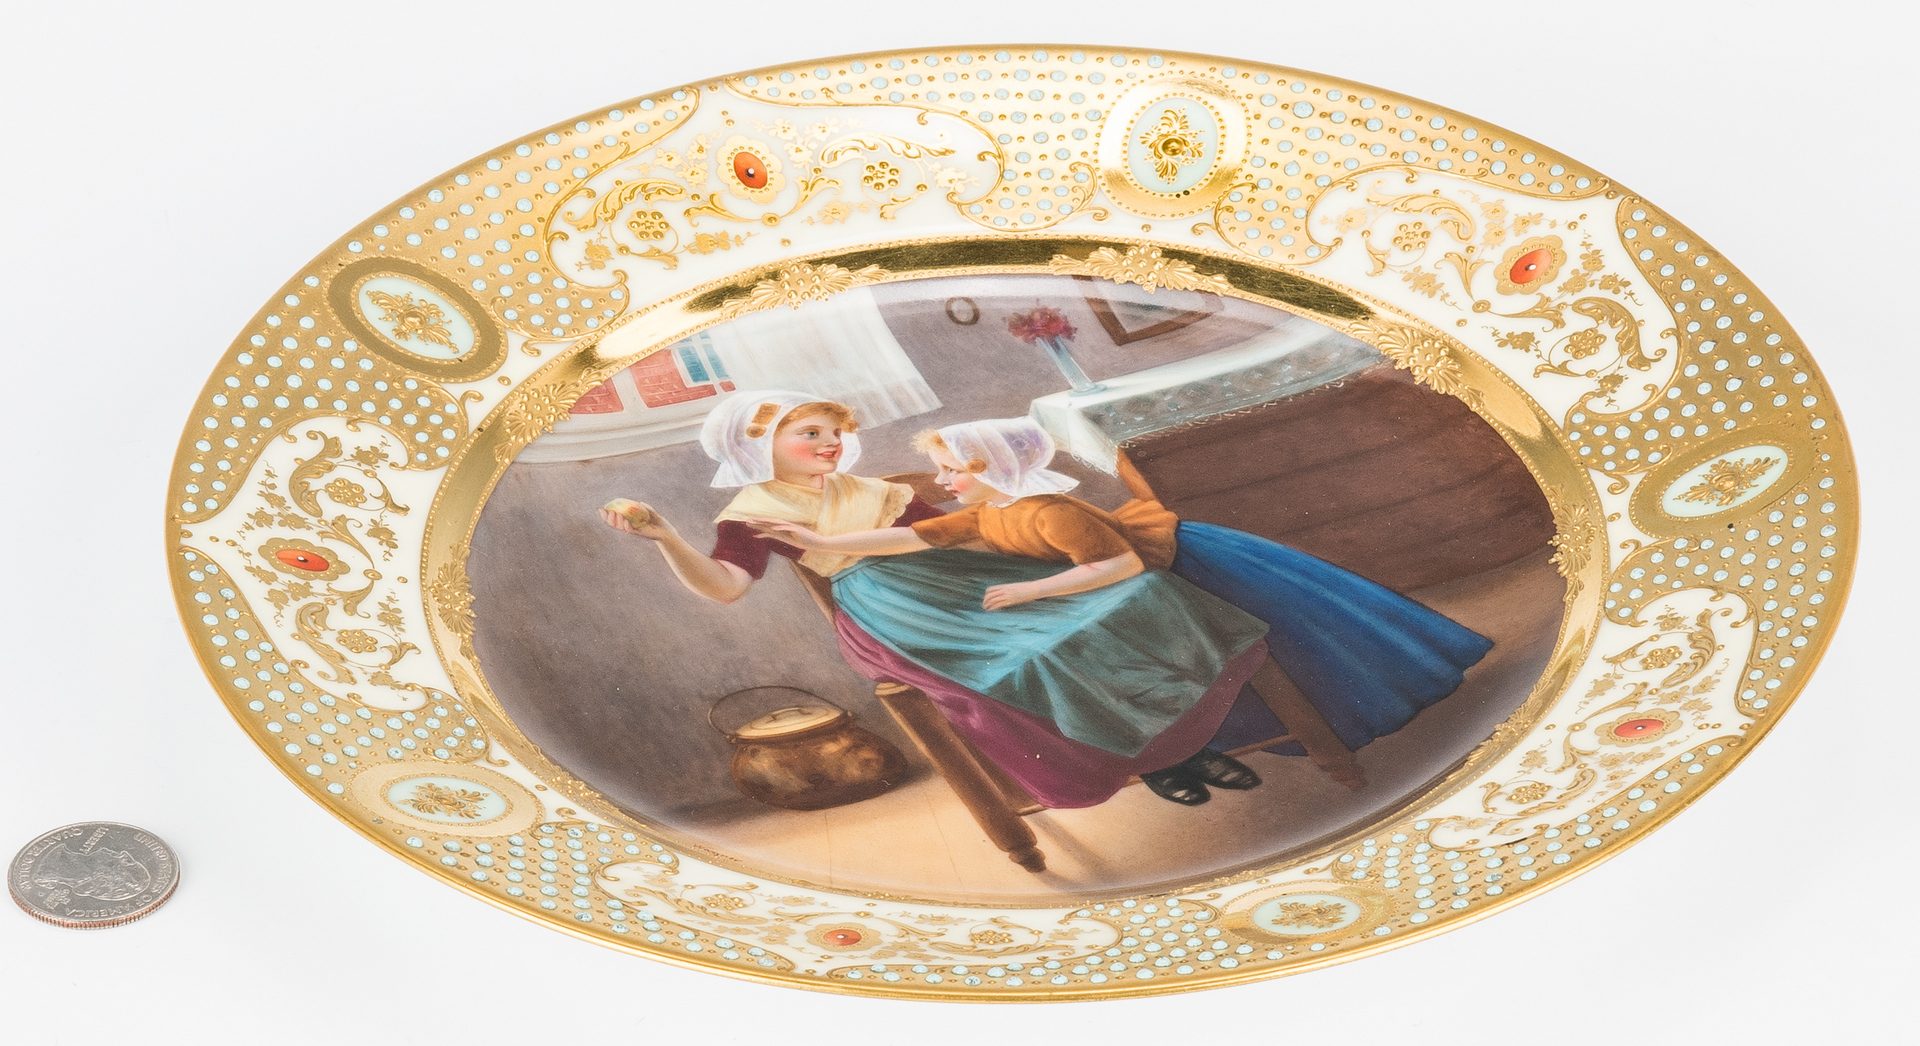 Lot 228: German Porcelain Cabinet Plate signed Wagner, "Eve's Daughter"